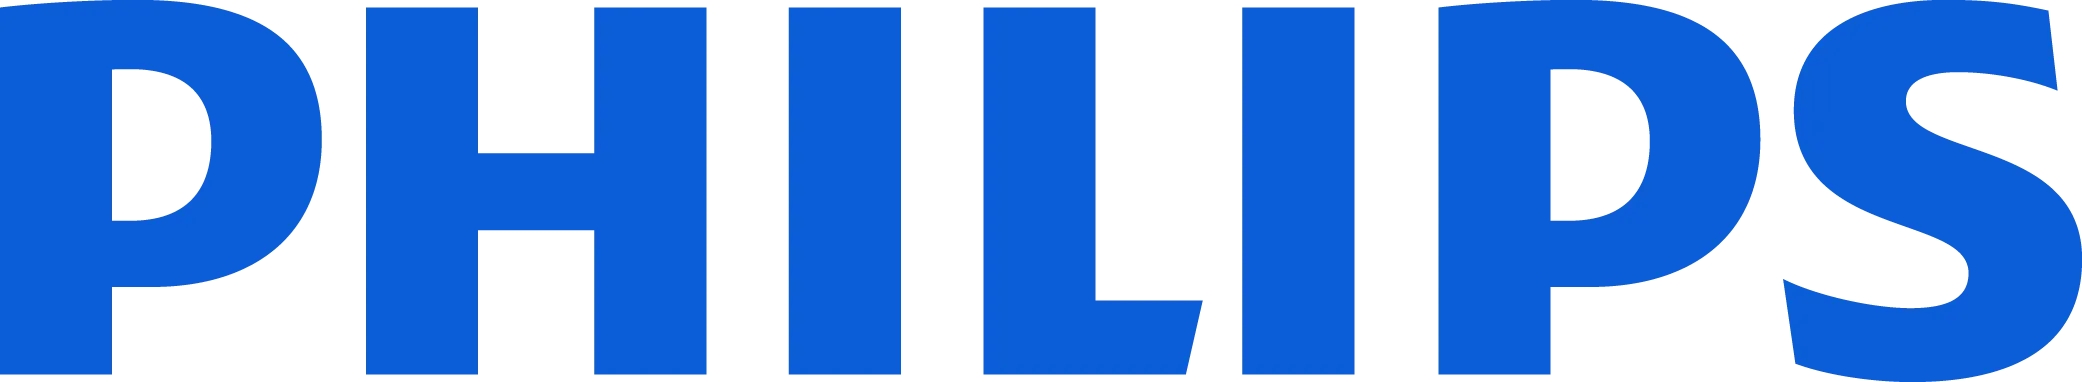 Philips_logo copy